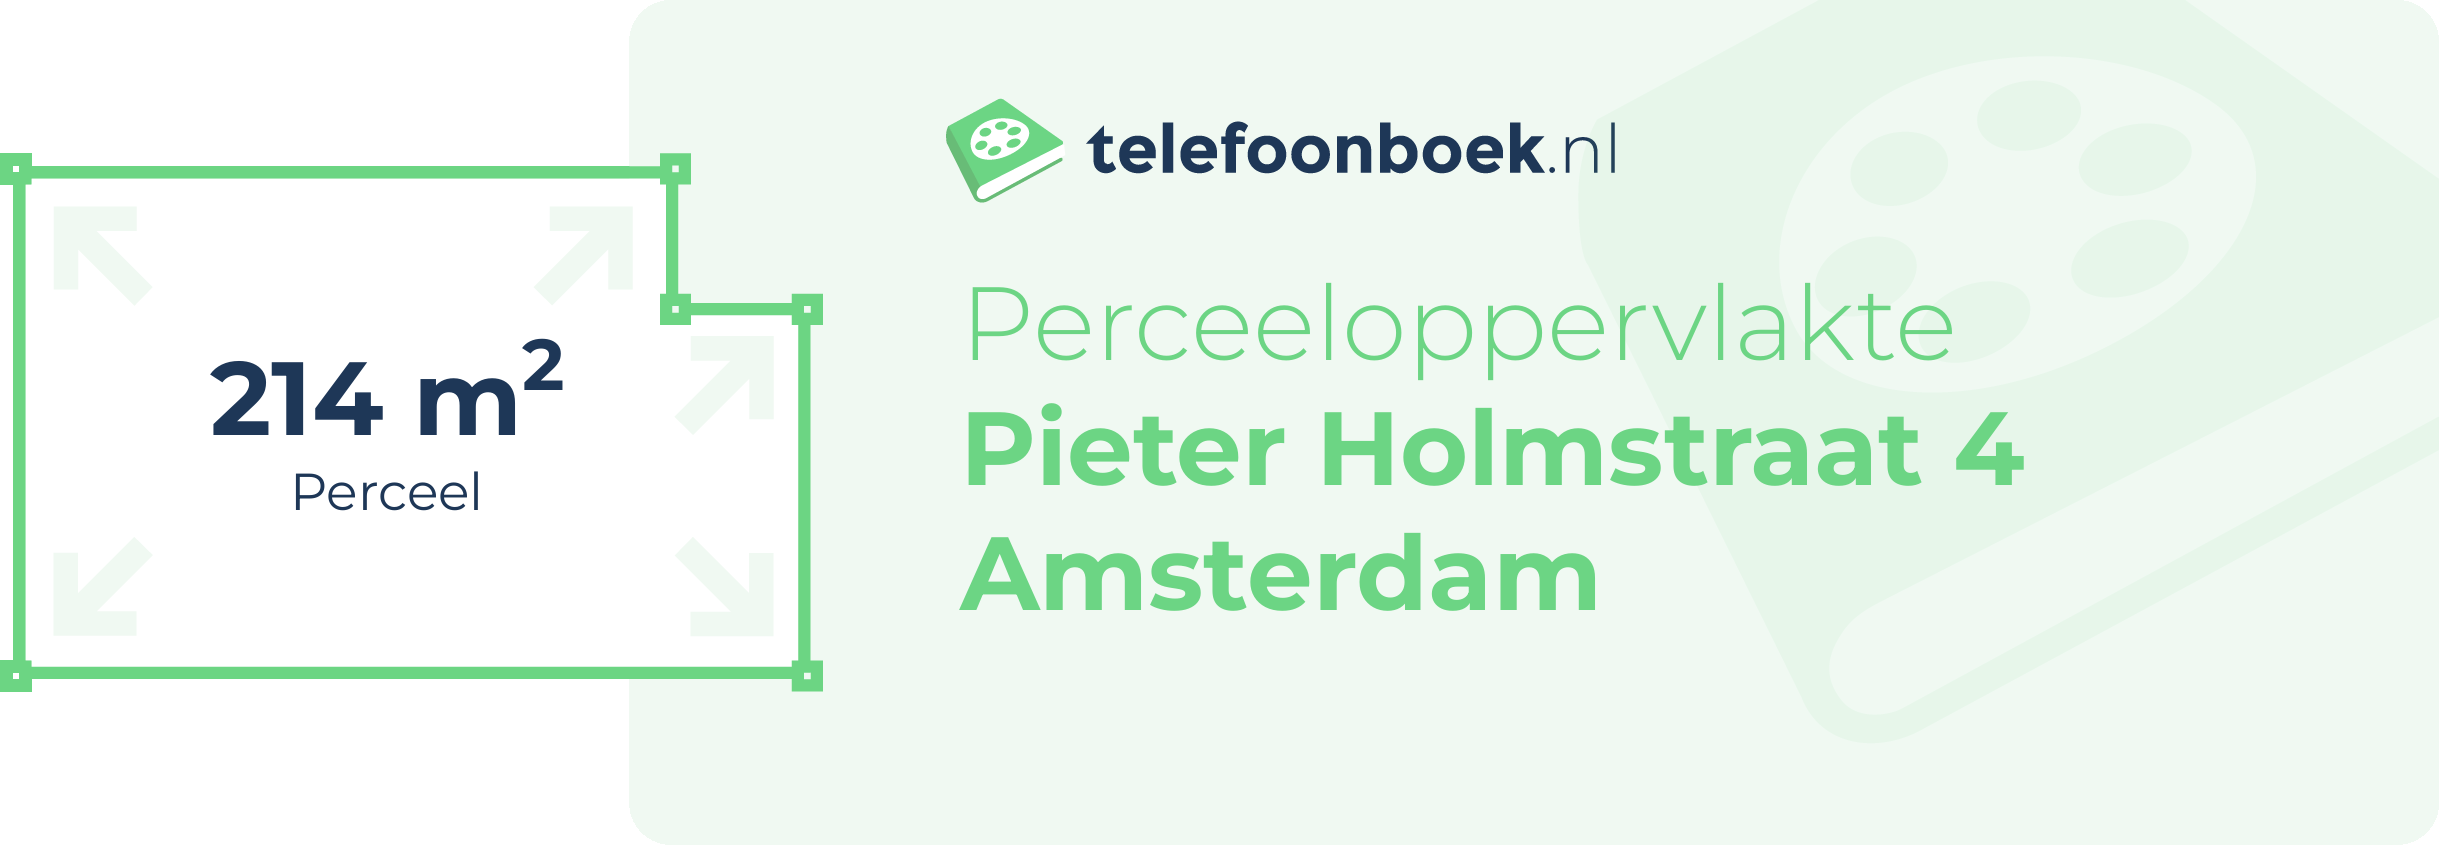 Perceeloppervlakte Pieter Holmstraat 4 Amsterdam